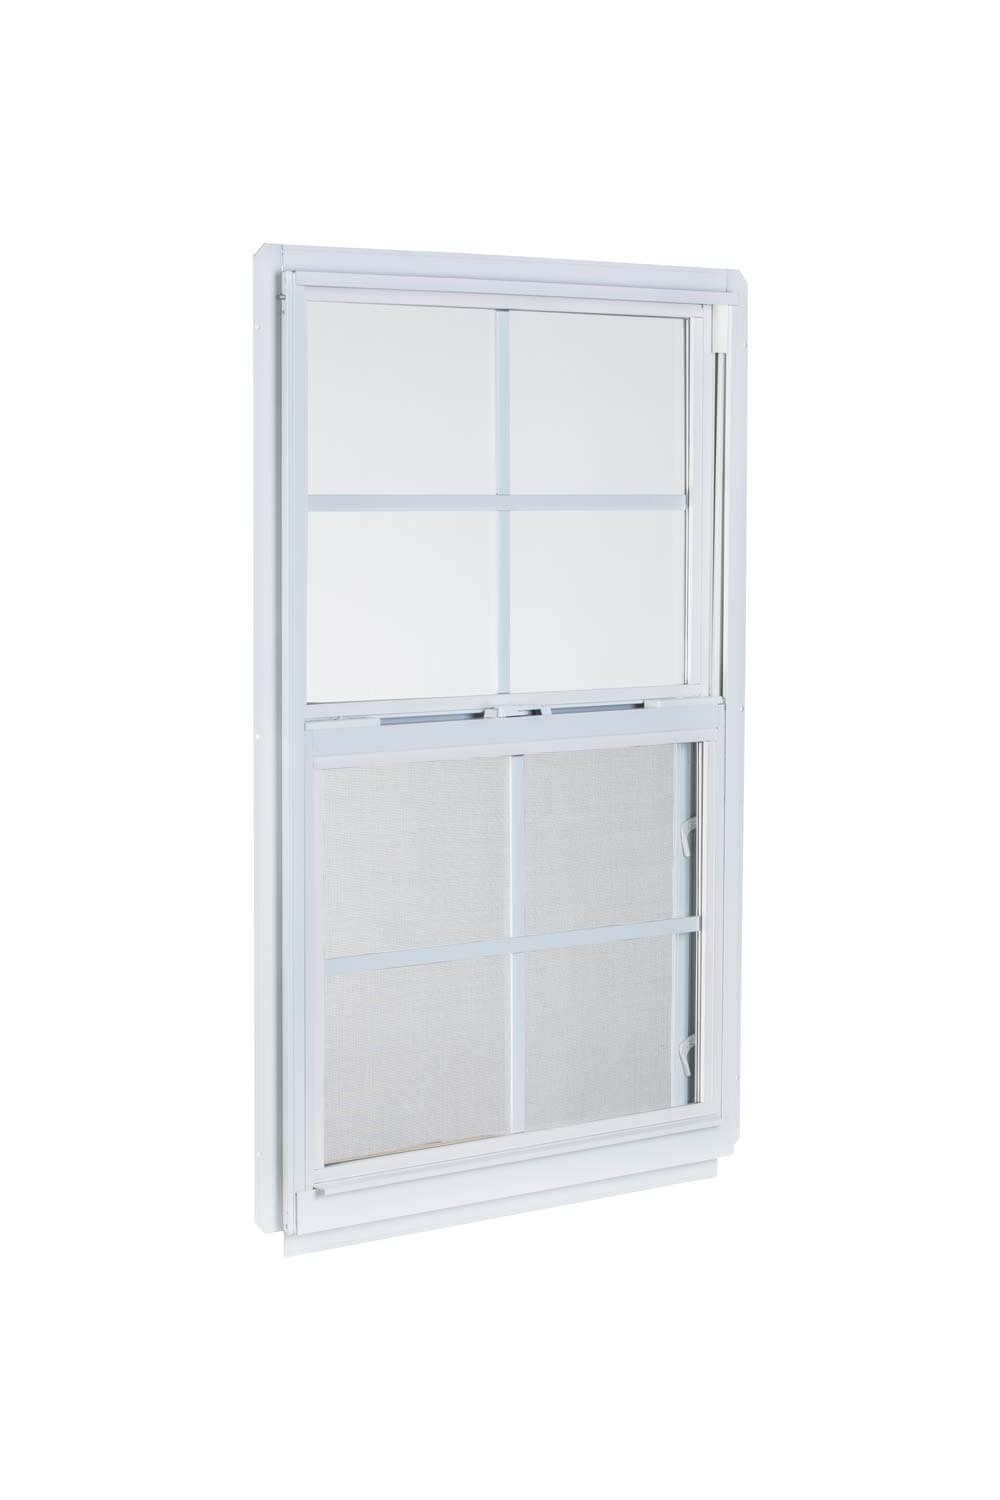 2' x 2'4" White Aluminum Insulated Window (4/4 Window Pane Arrangement) Series 96